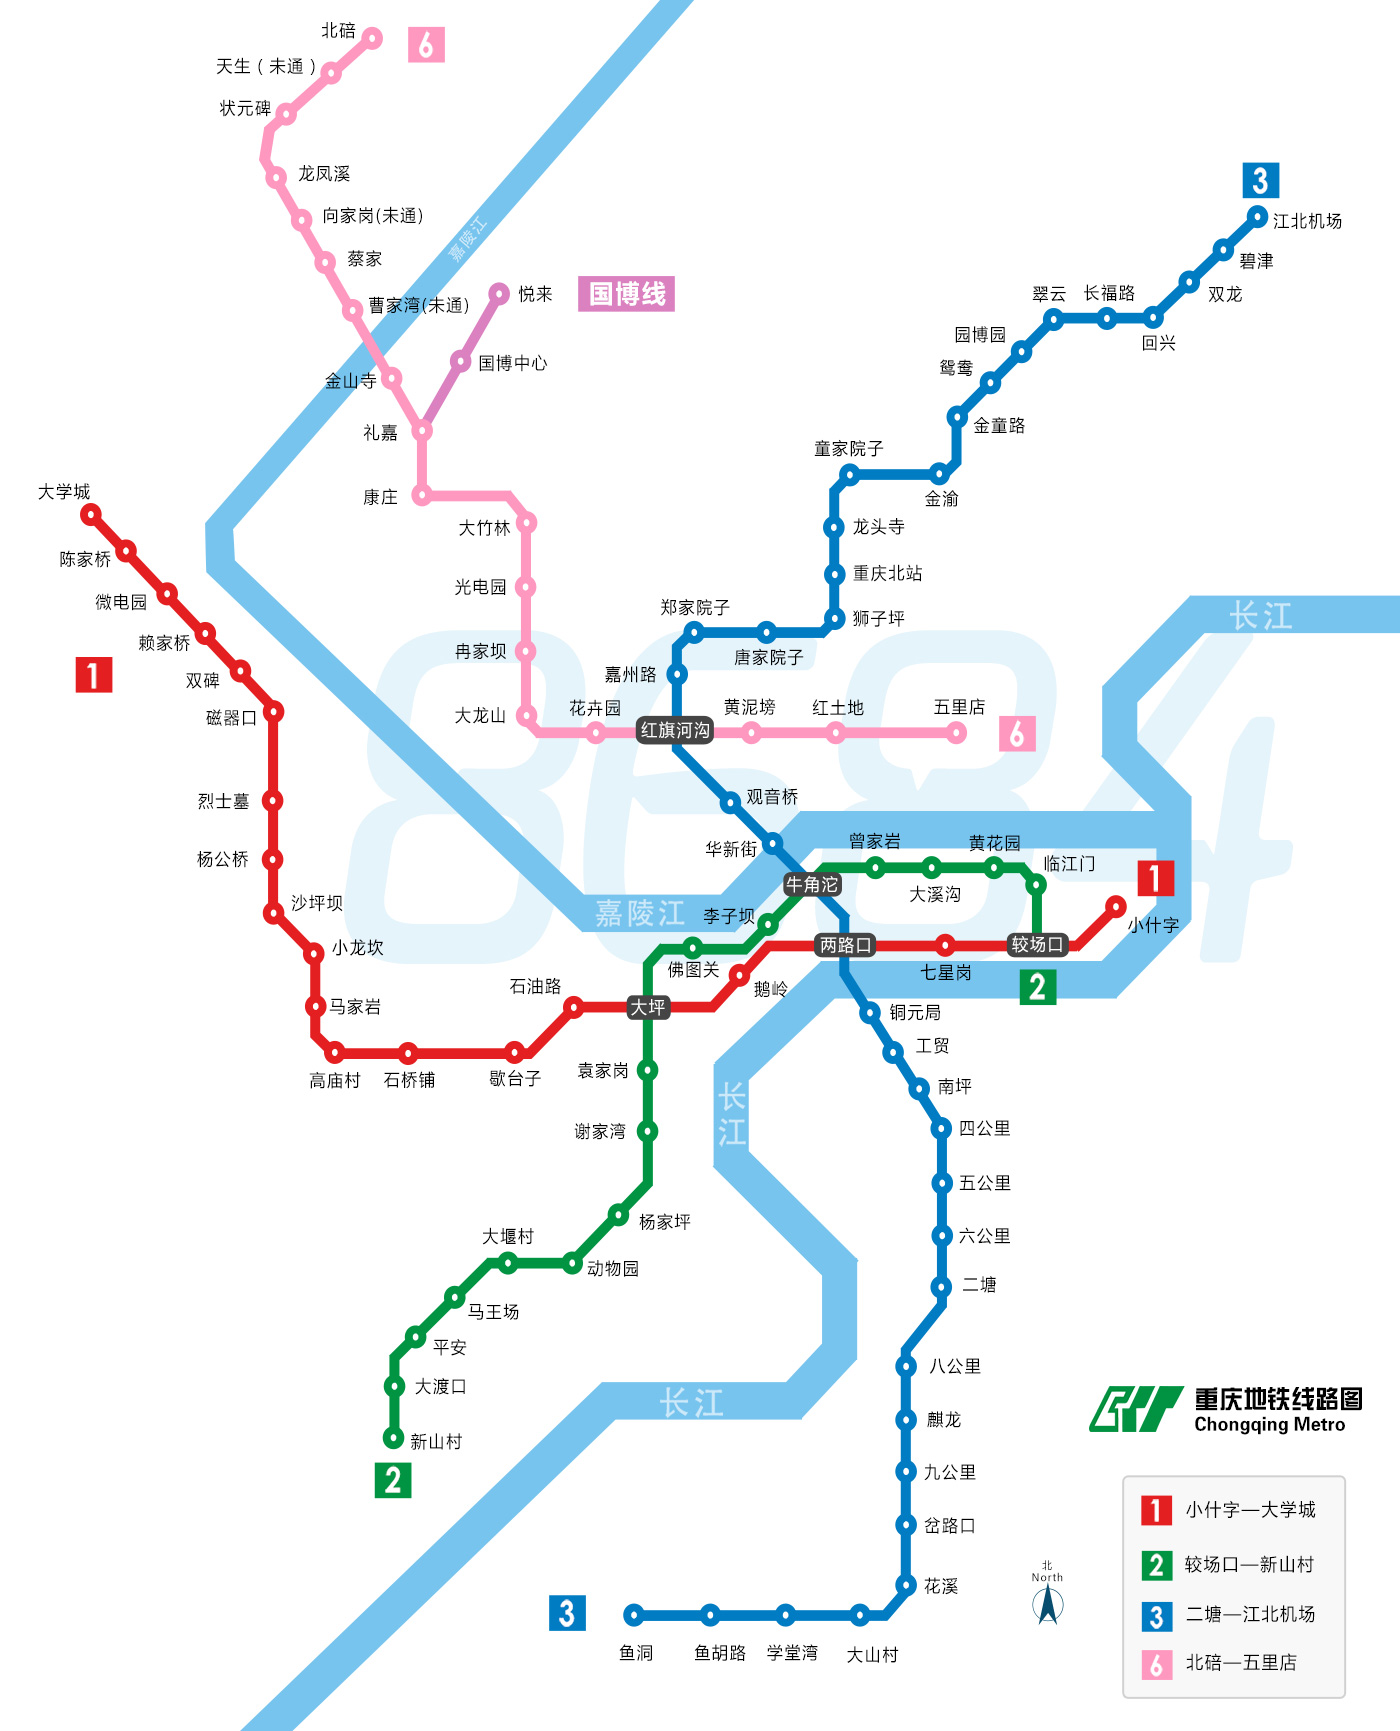 重庆地铁线路图下载|重庆地铁高清线路图下载